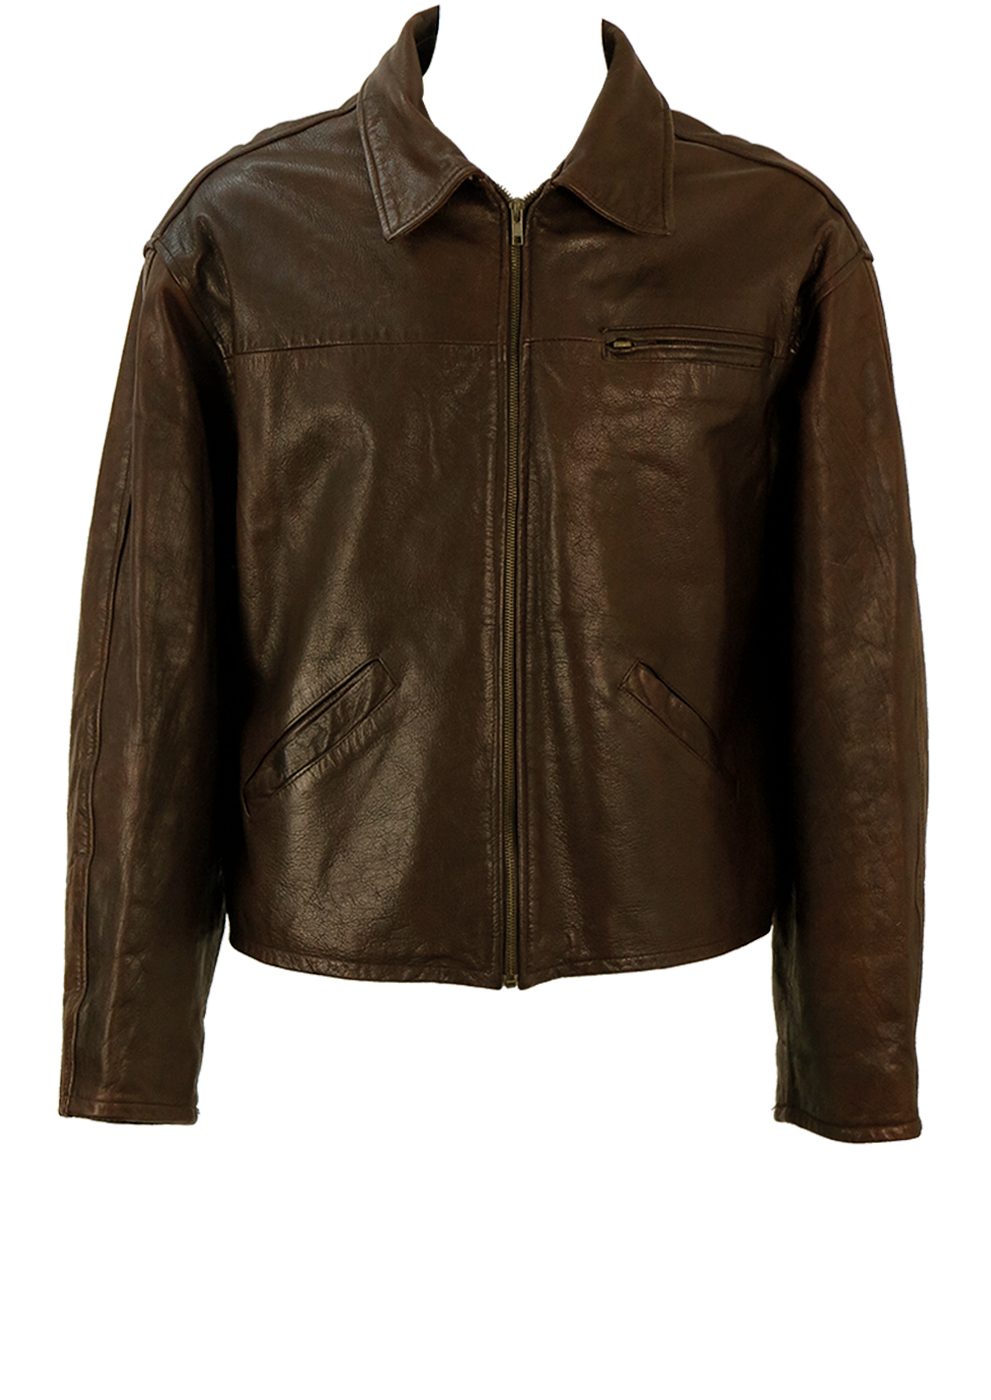 Vintage 90's Brown Leather Jacket - L